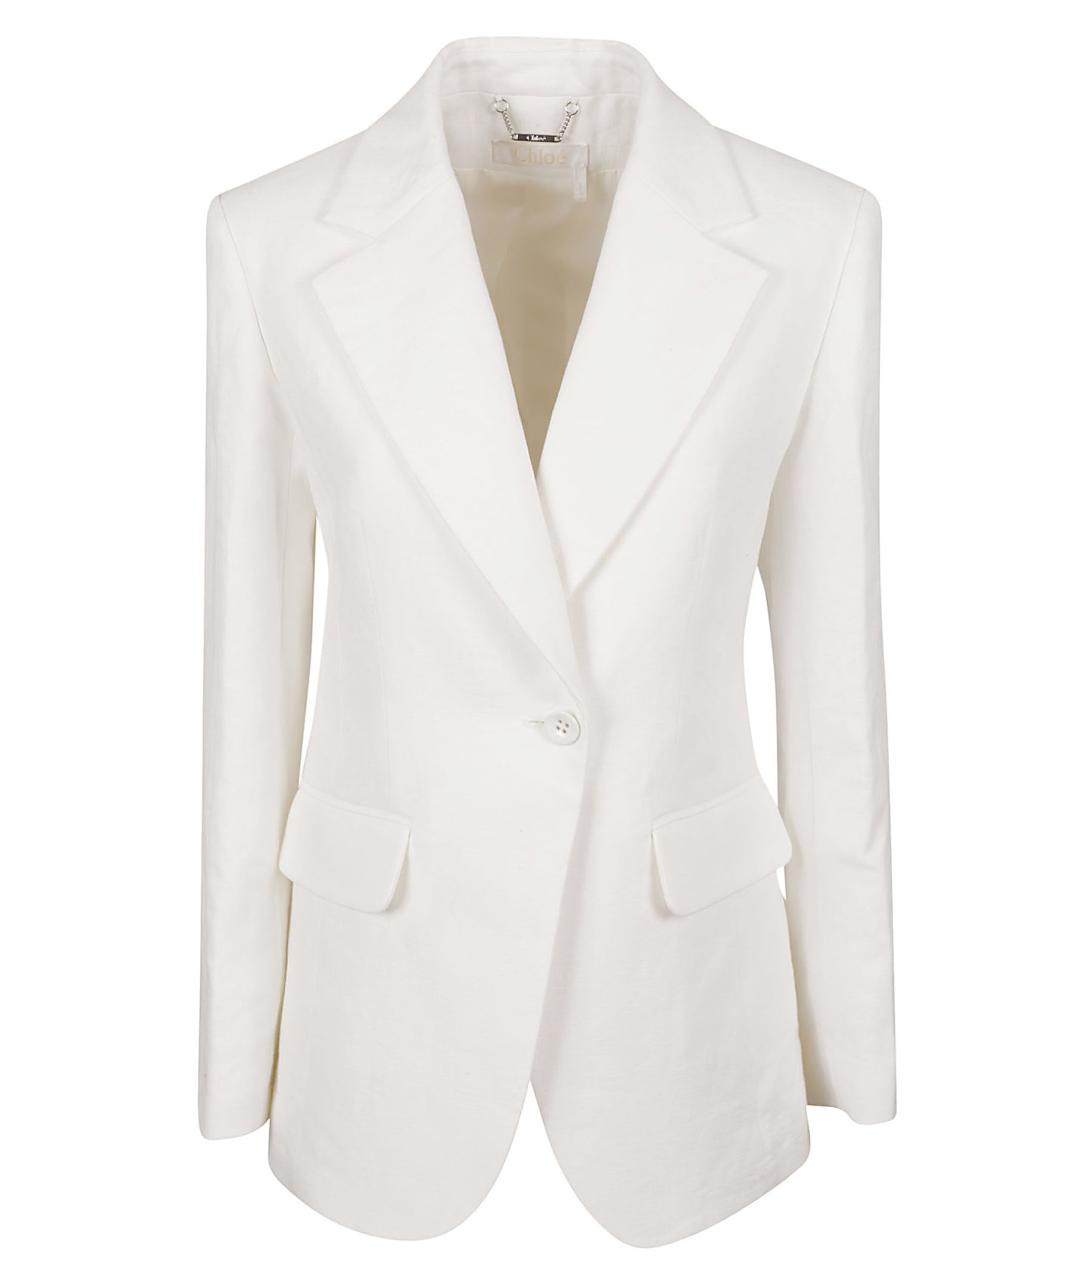 CHLOE Белый шелковый жакет/пиджак, фото 1